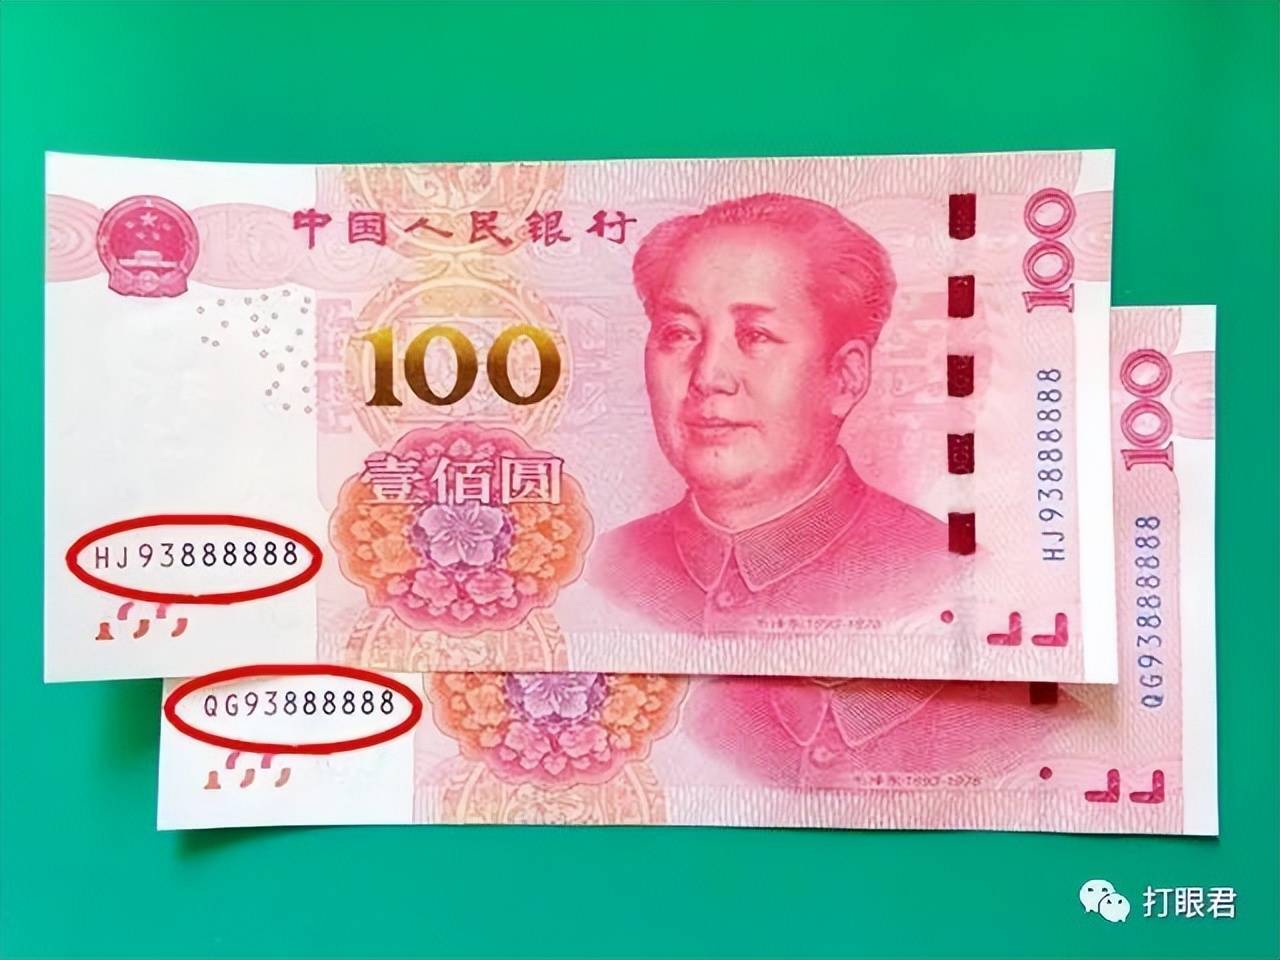 流通的100元纸币属于第五套人民币,这一系列的100元纸币分别在1999年